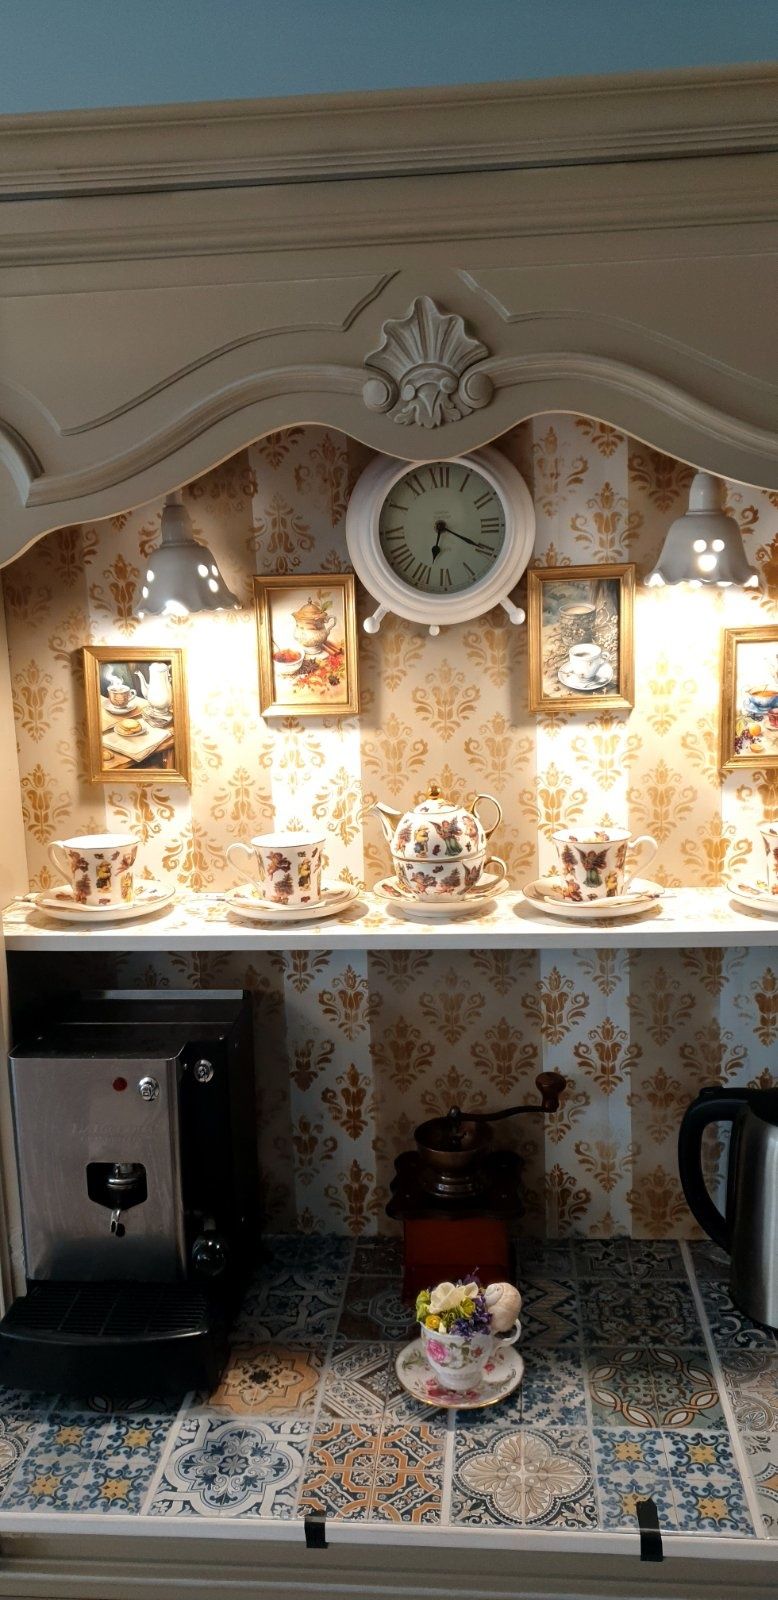 Ръчно декориран бар шкаф за кафе
Цветовете пастелни и нежни, порцелано